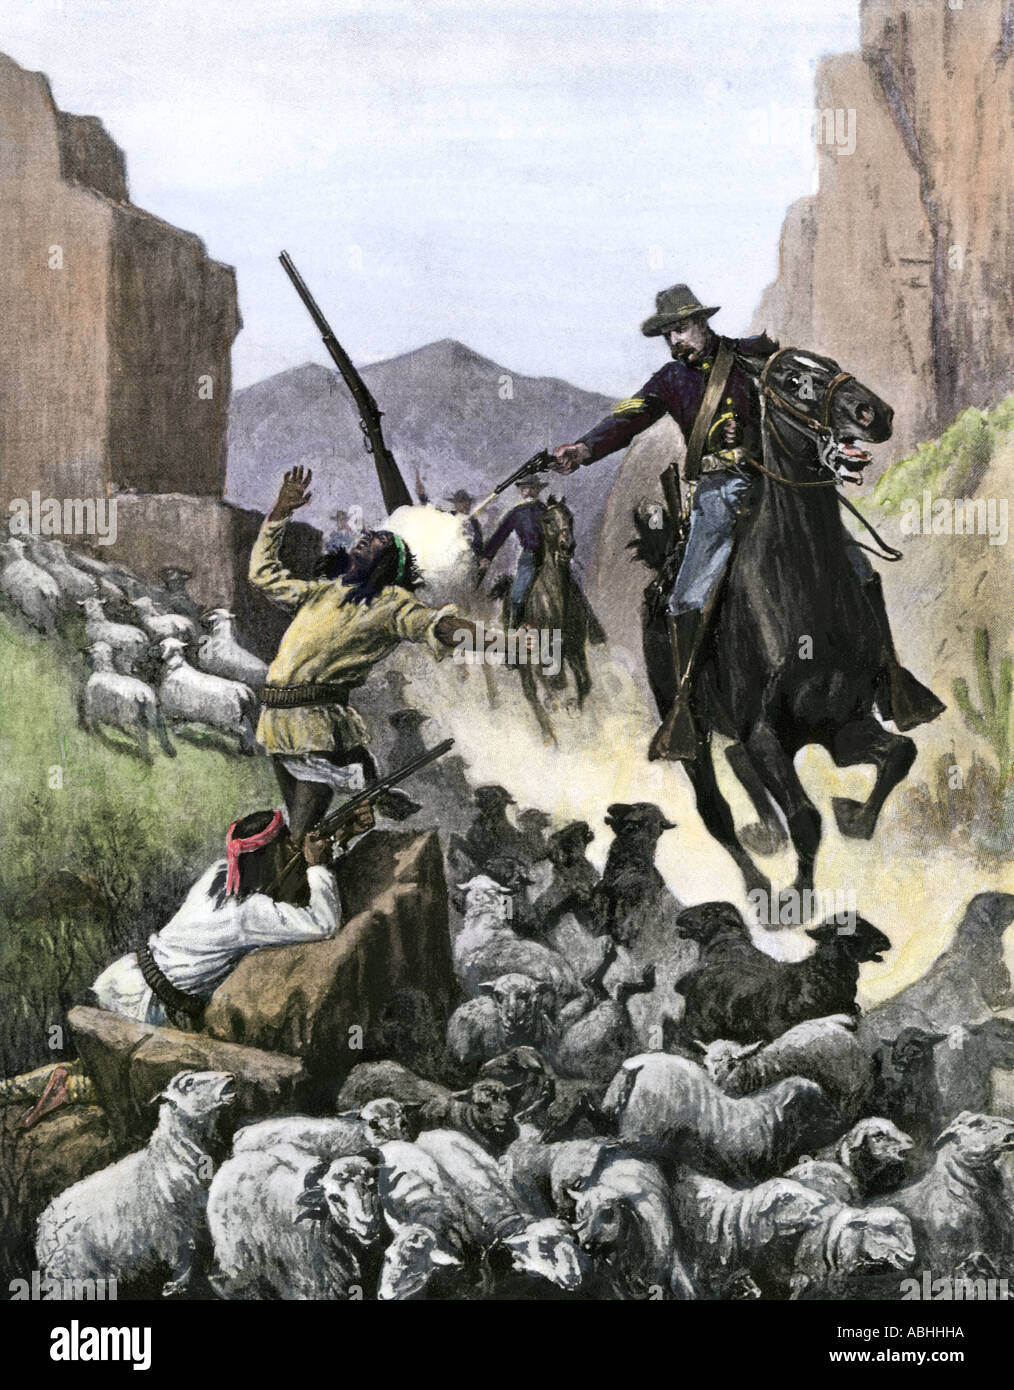 Soldat de cavalerie nous éleveurs ovins Apache prise dans un canyon des années 1800. La main, d'un demi-ton Zogbaum illustration Banque D'Images